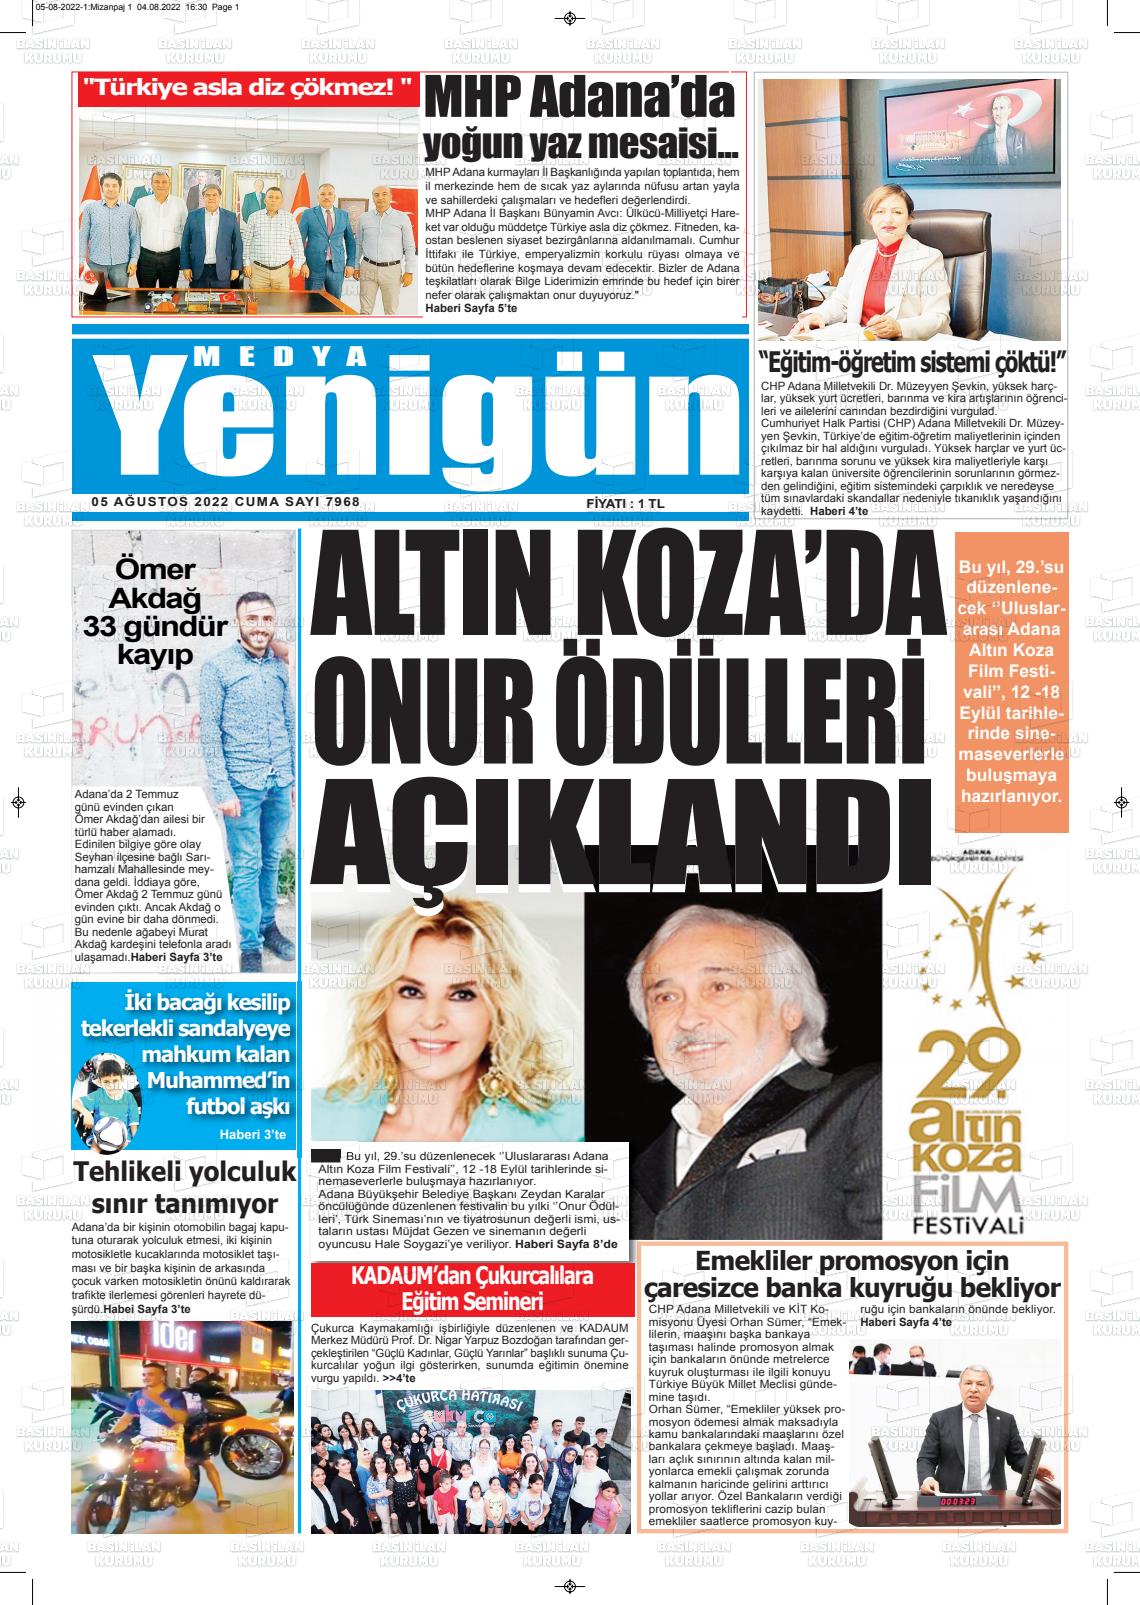 05 Ağustos 2022 Medya Yenigün Gazete Manşeti